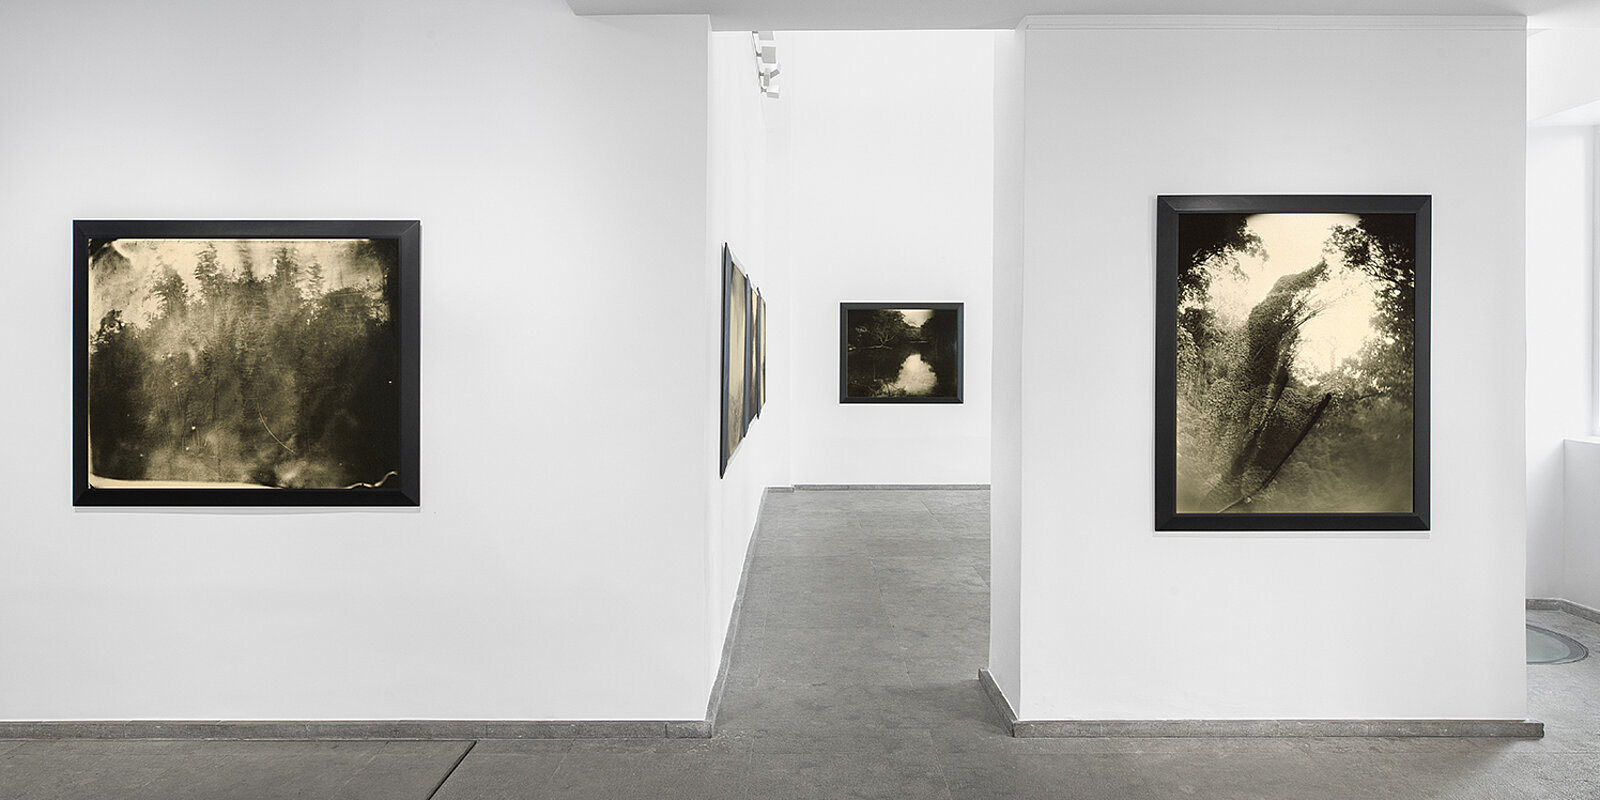 Vue d'installation, Sally Mann, Galerie Karsten Greve Paris, 2021. Photo: Nicolas Brasseur